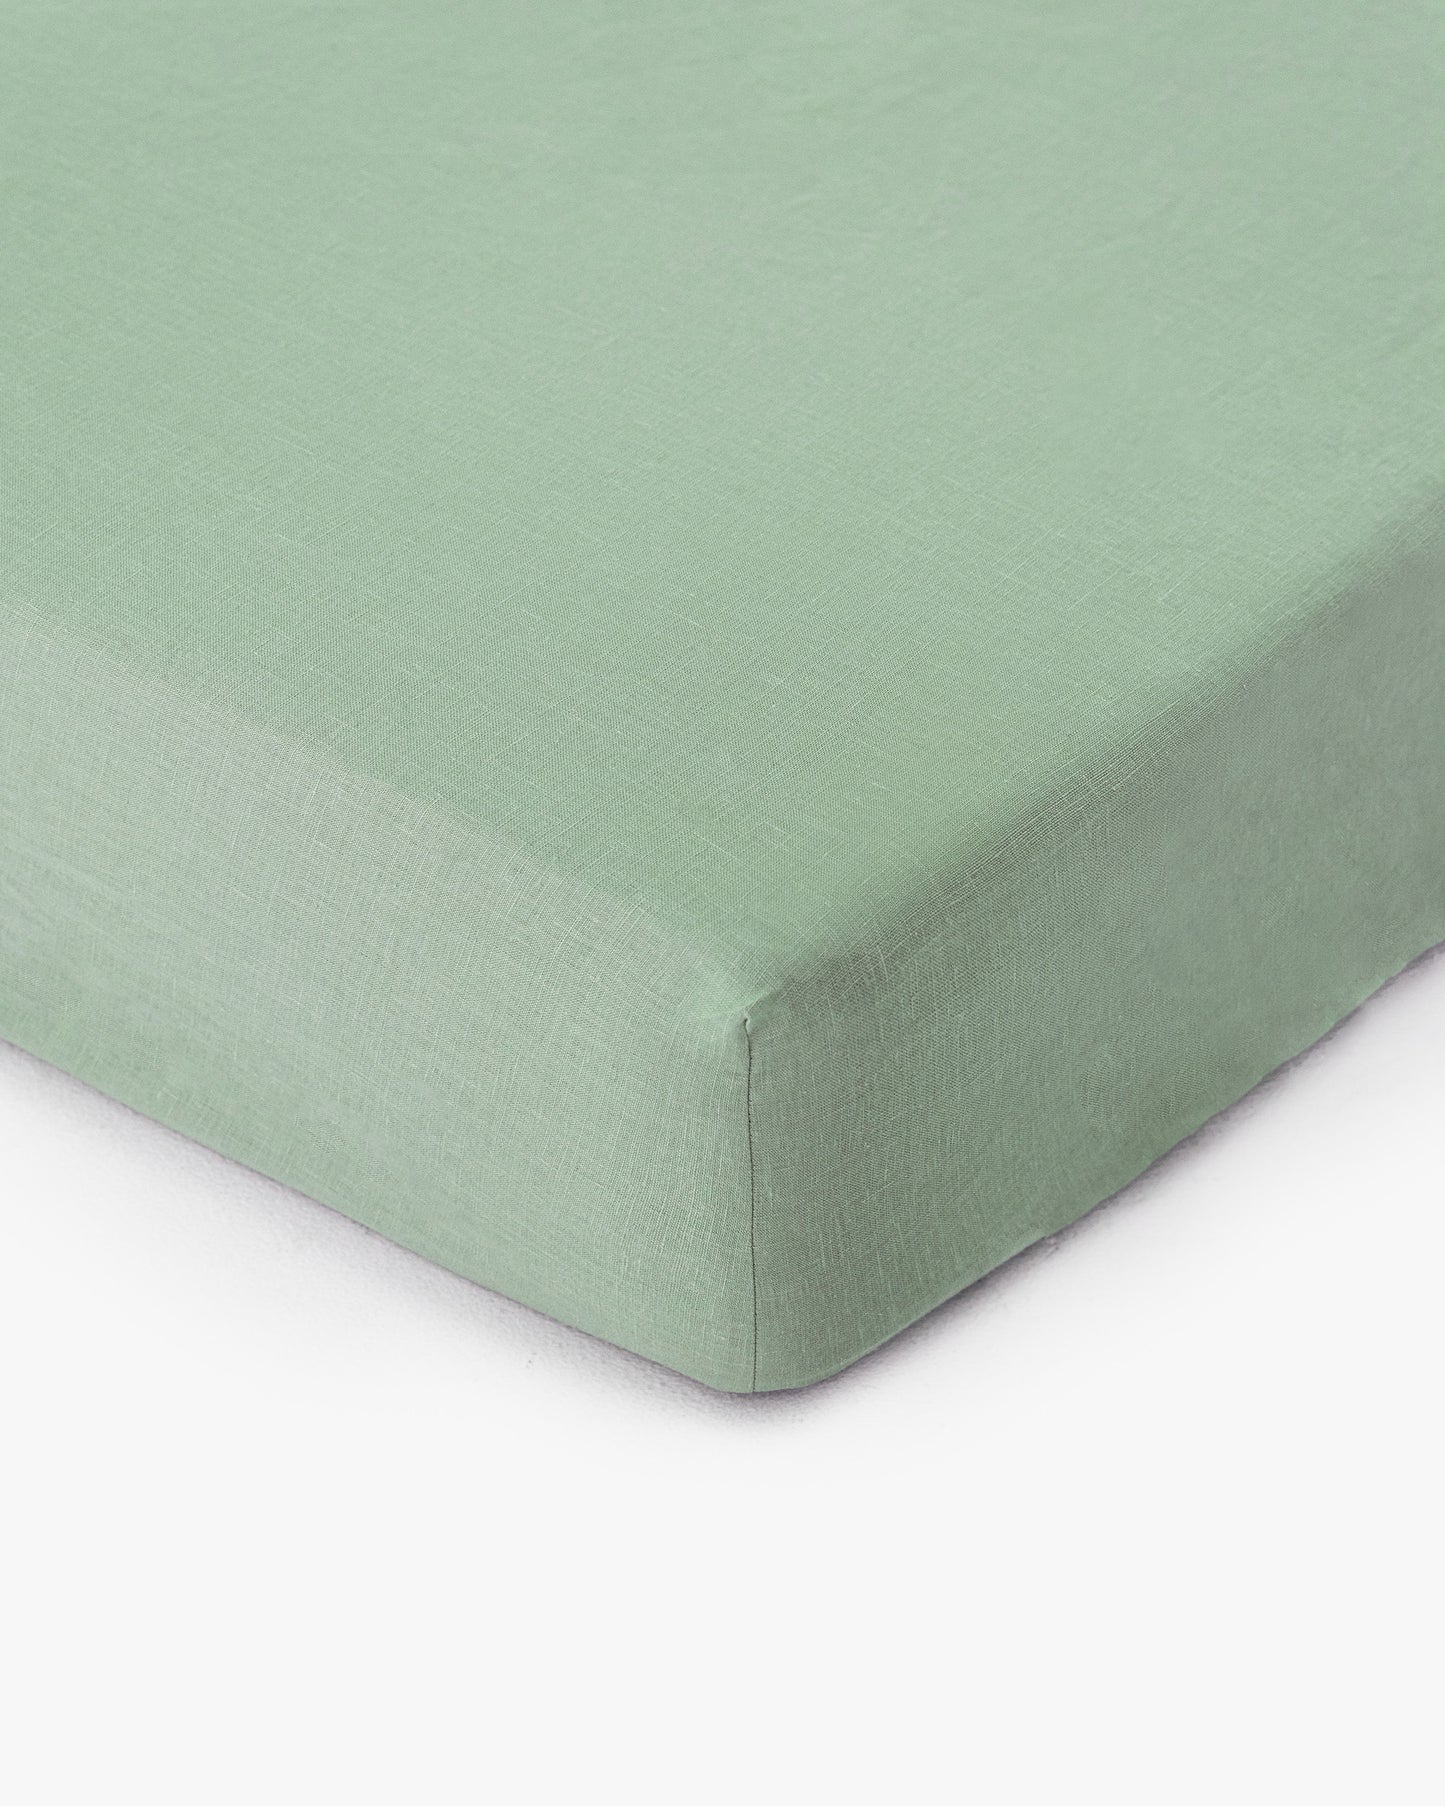 Matcha green linen fitted sheet - MagicLinen